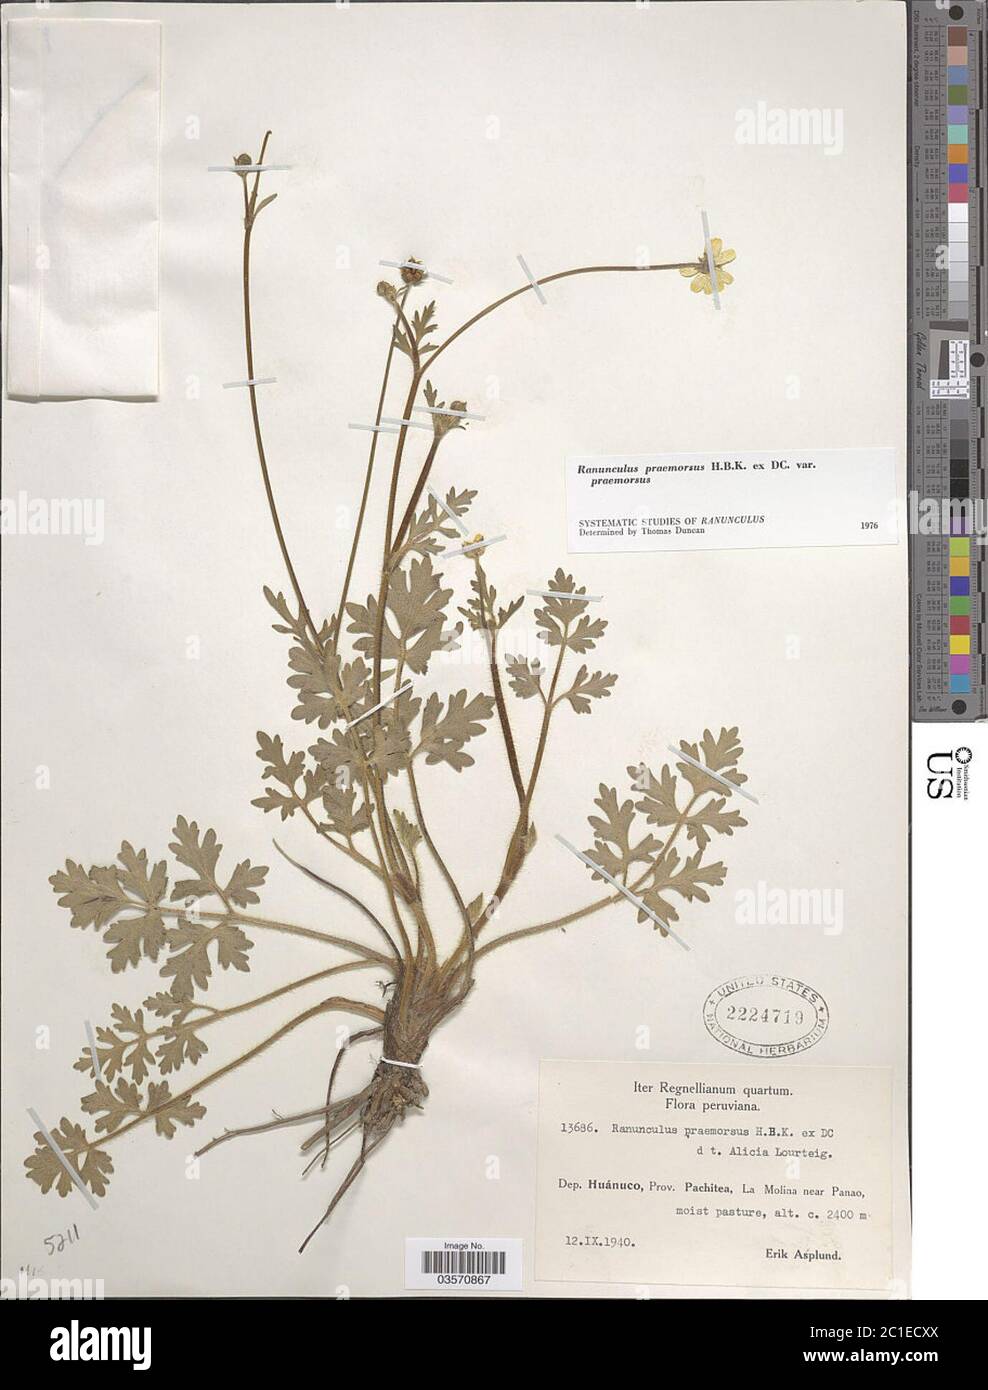 Ranunculus praemorsus Kunth ex DC Ranunculus praemorsus Kunth ex DC. Stock Photo